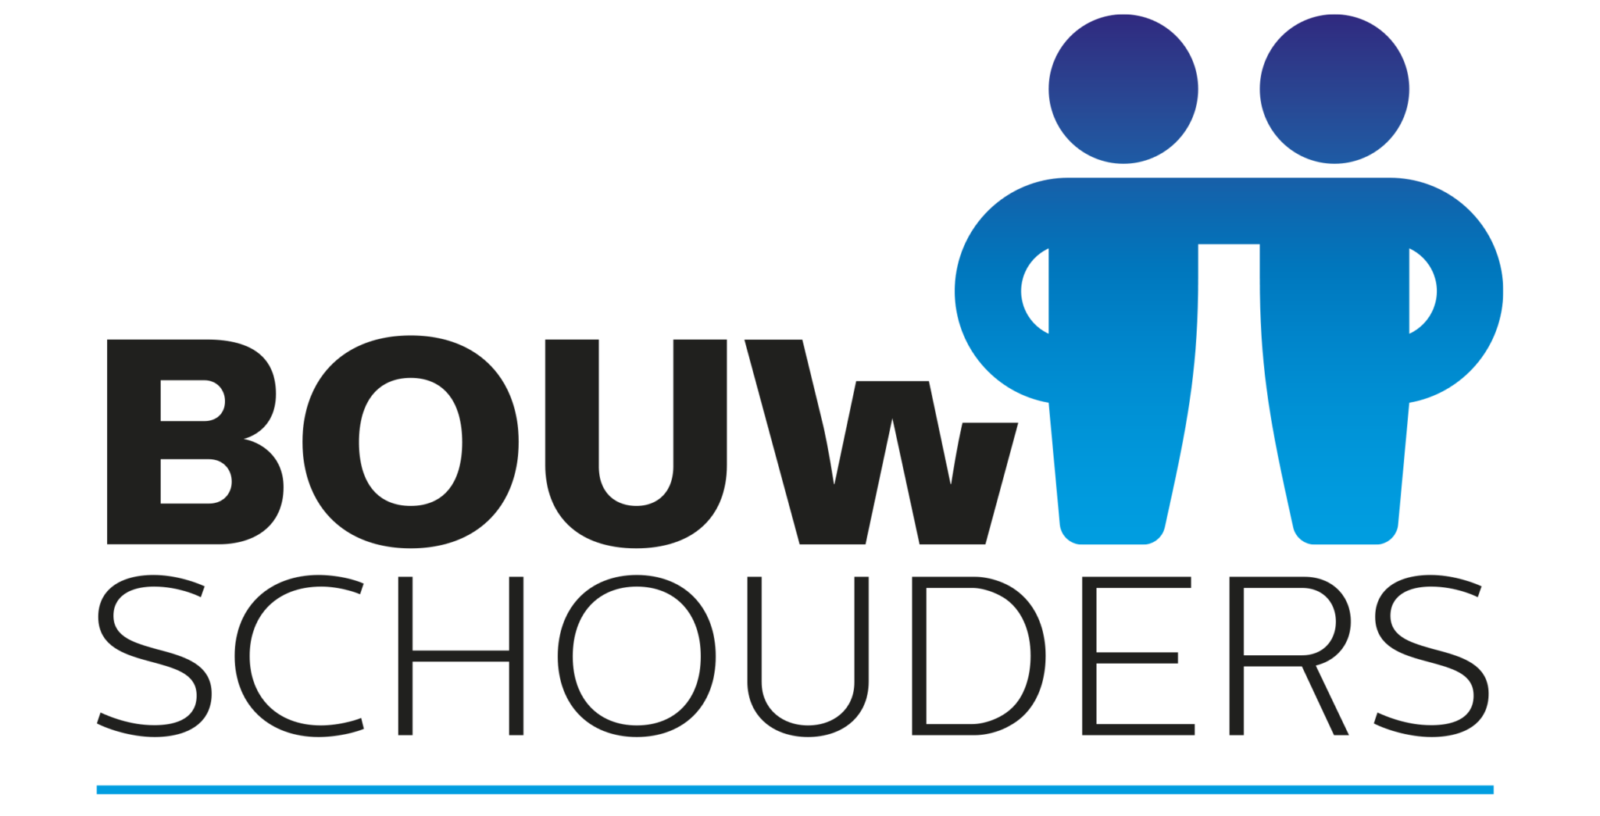 Stichting Bouwschouders